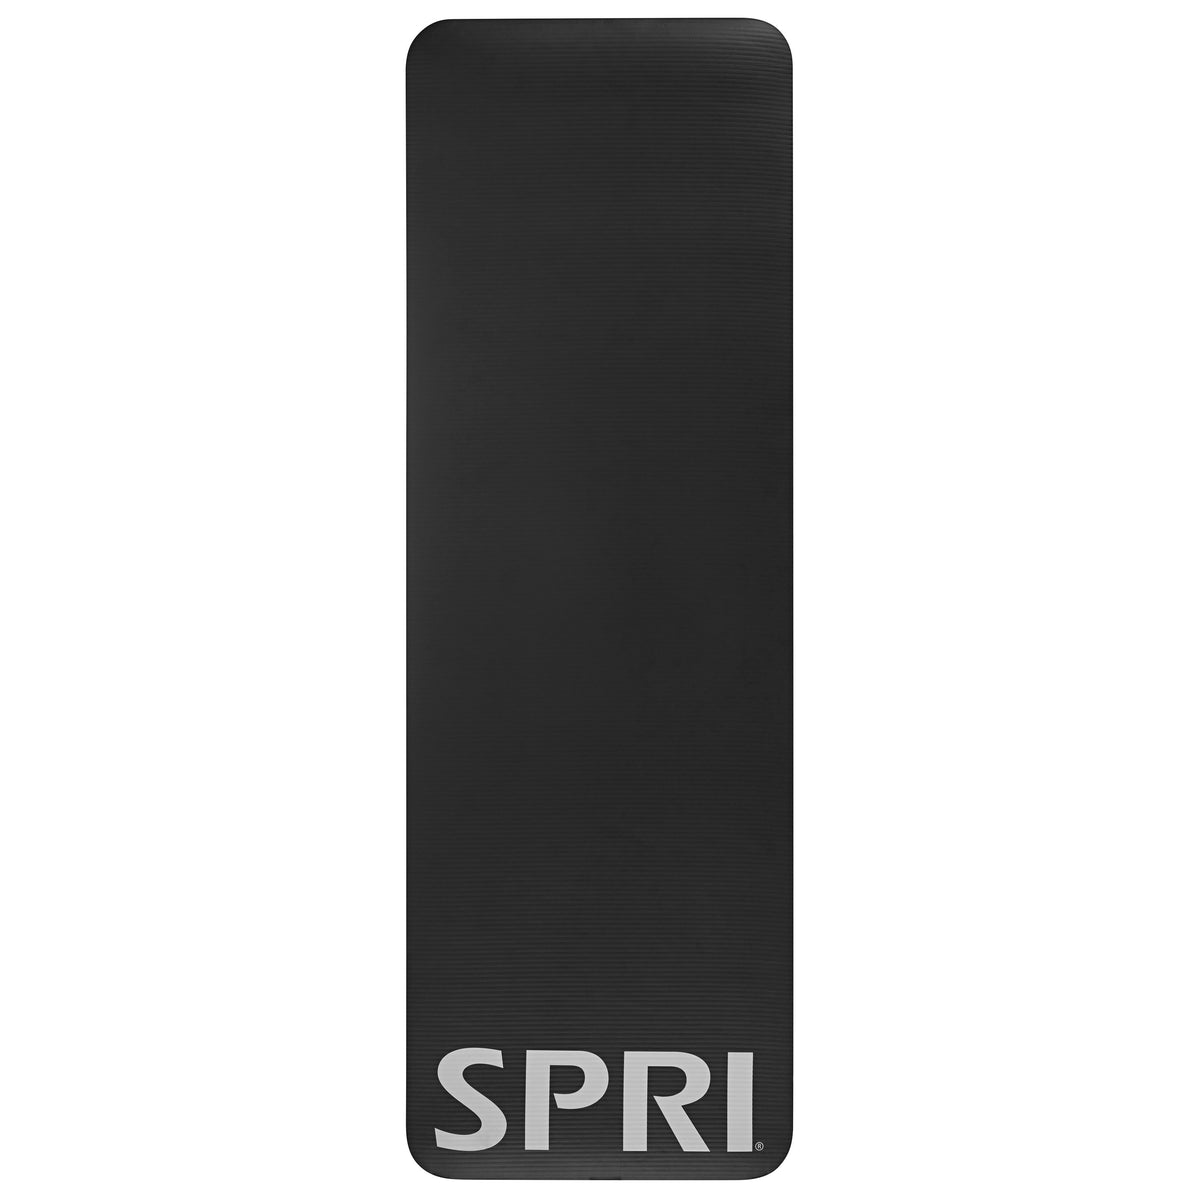 SPRI 12mm Pro Fitness Mat Black flat